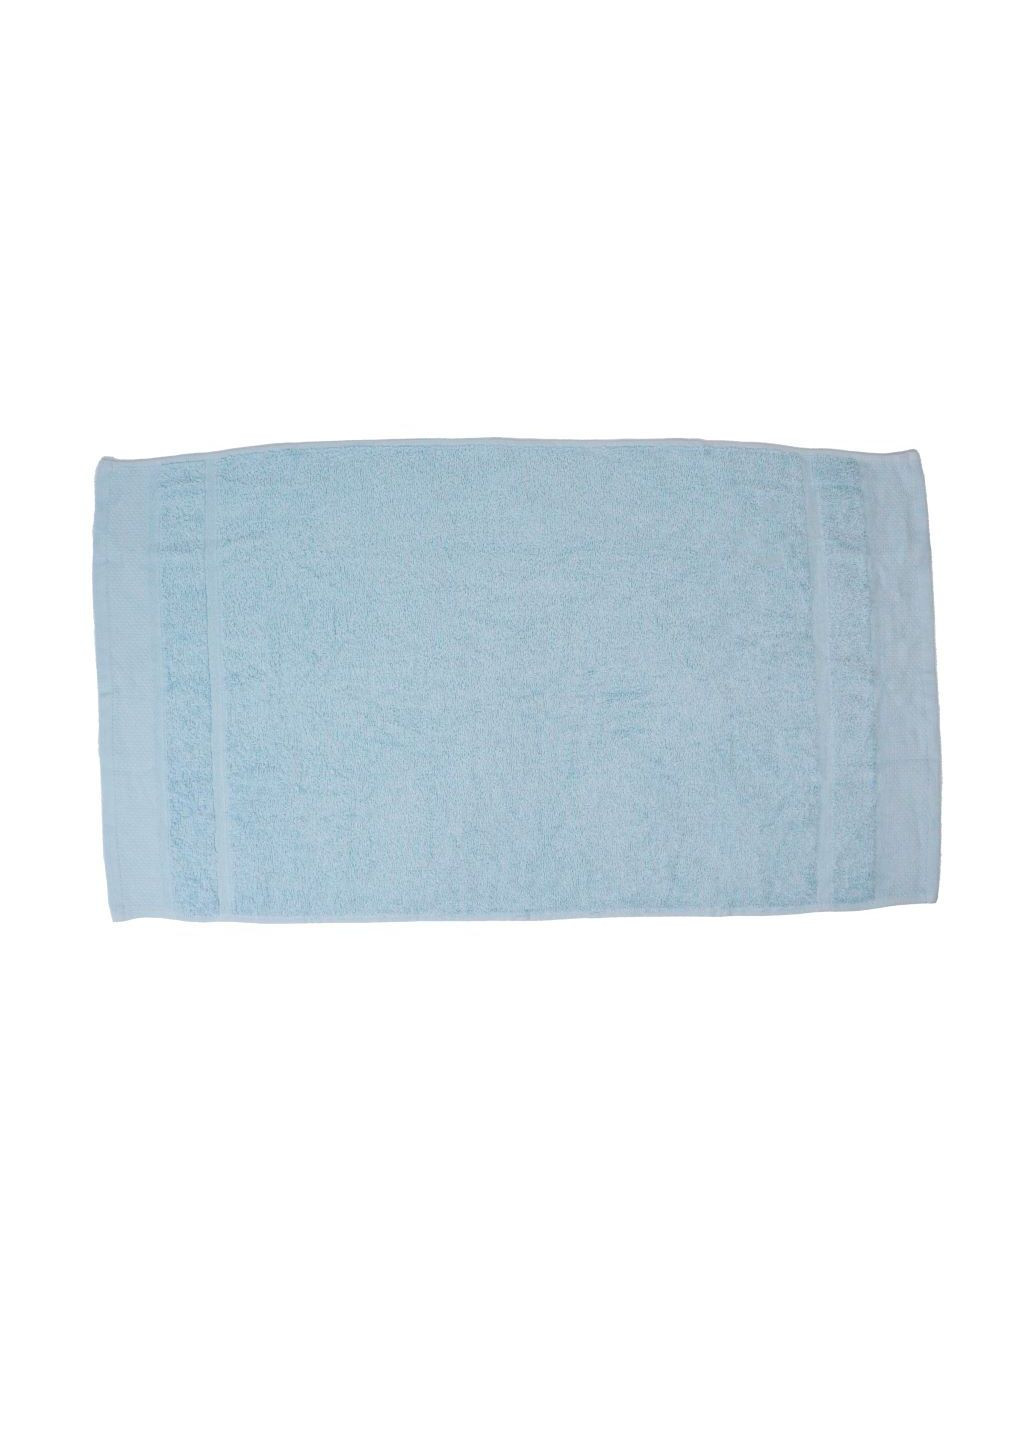 Home Ideas полотенце махровое для рук 50х90 см голубое голубой производство - Германия